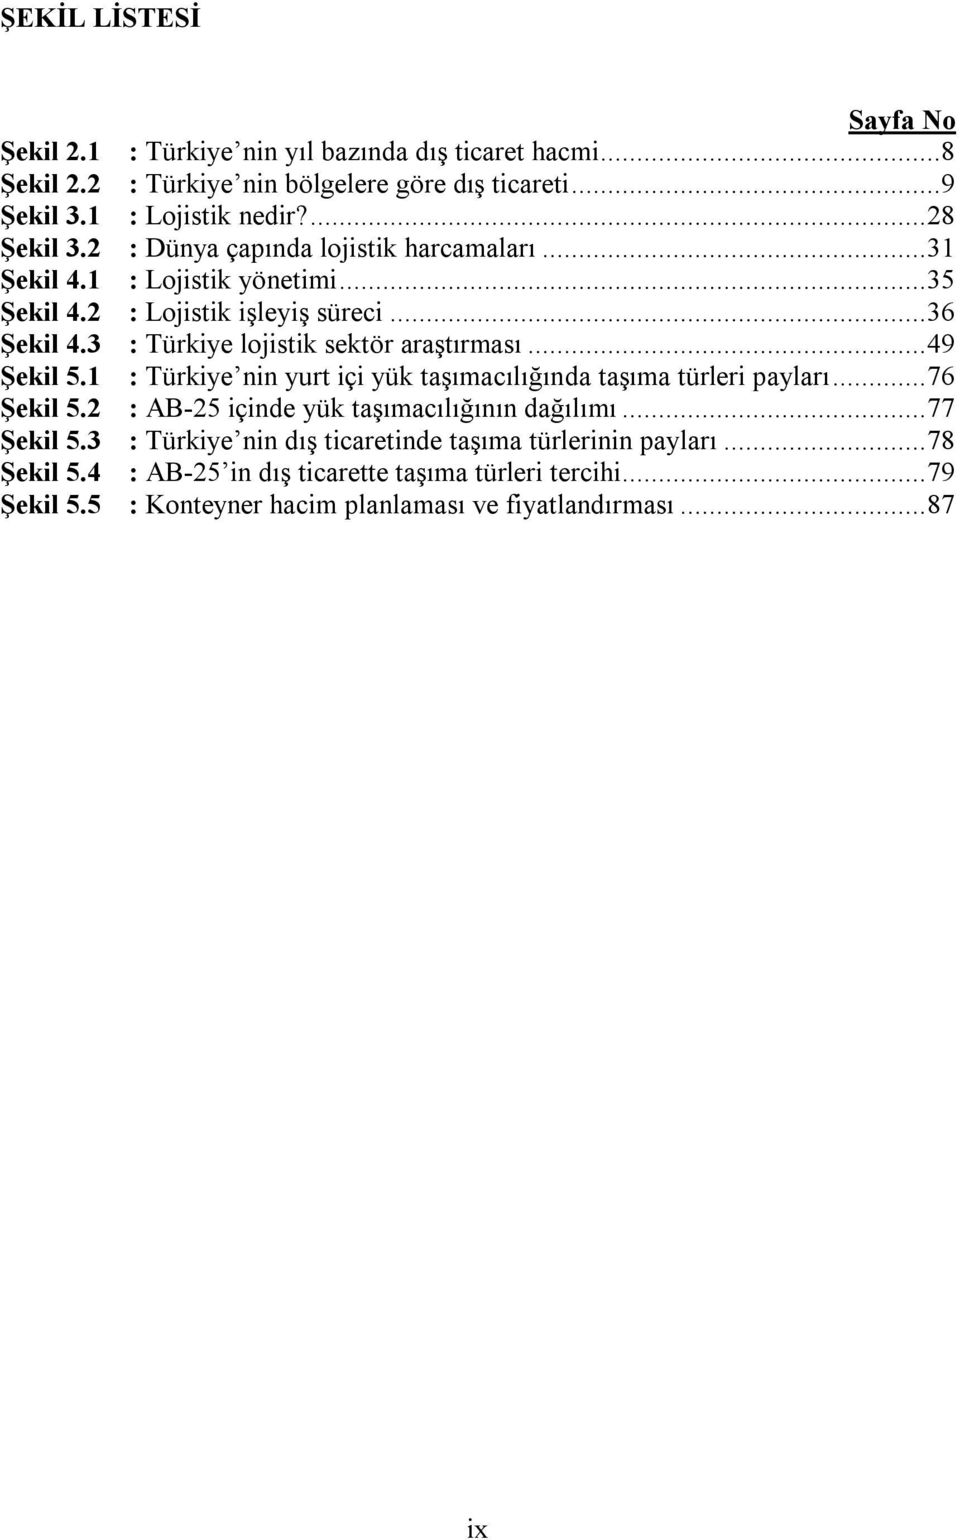 3 : Türkiye lojistik sektör araştırması...49 Şekil 5.1 : Türkiye nin yurt içi yük taşımacılığında taşıma türleri payları...76 Şekil 5.